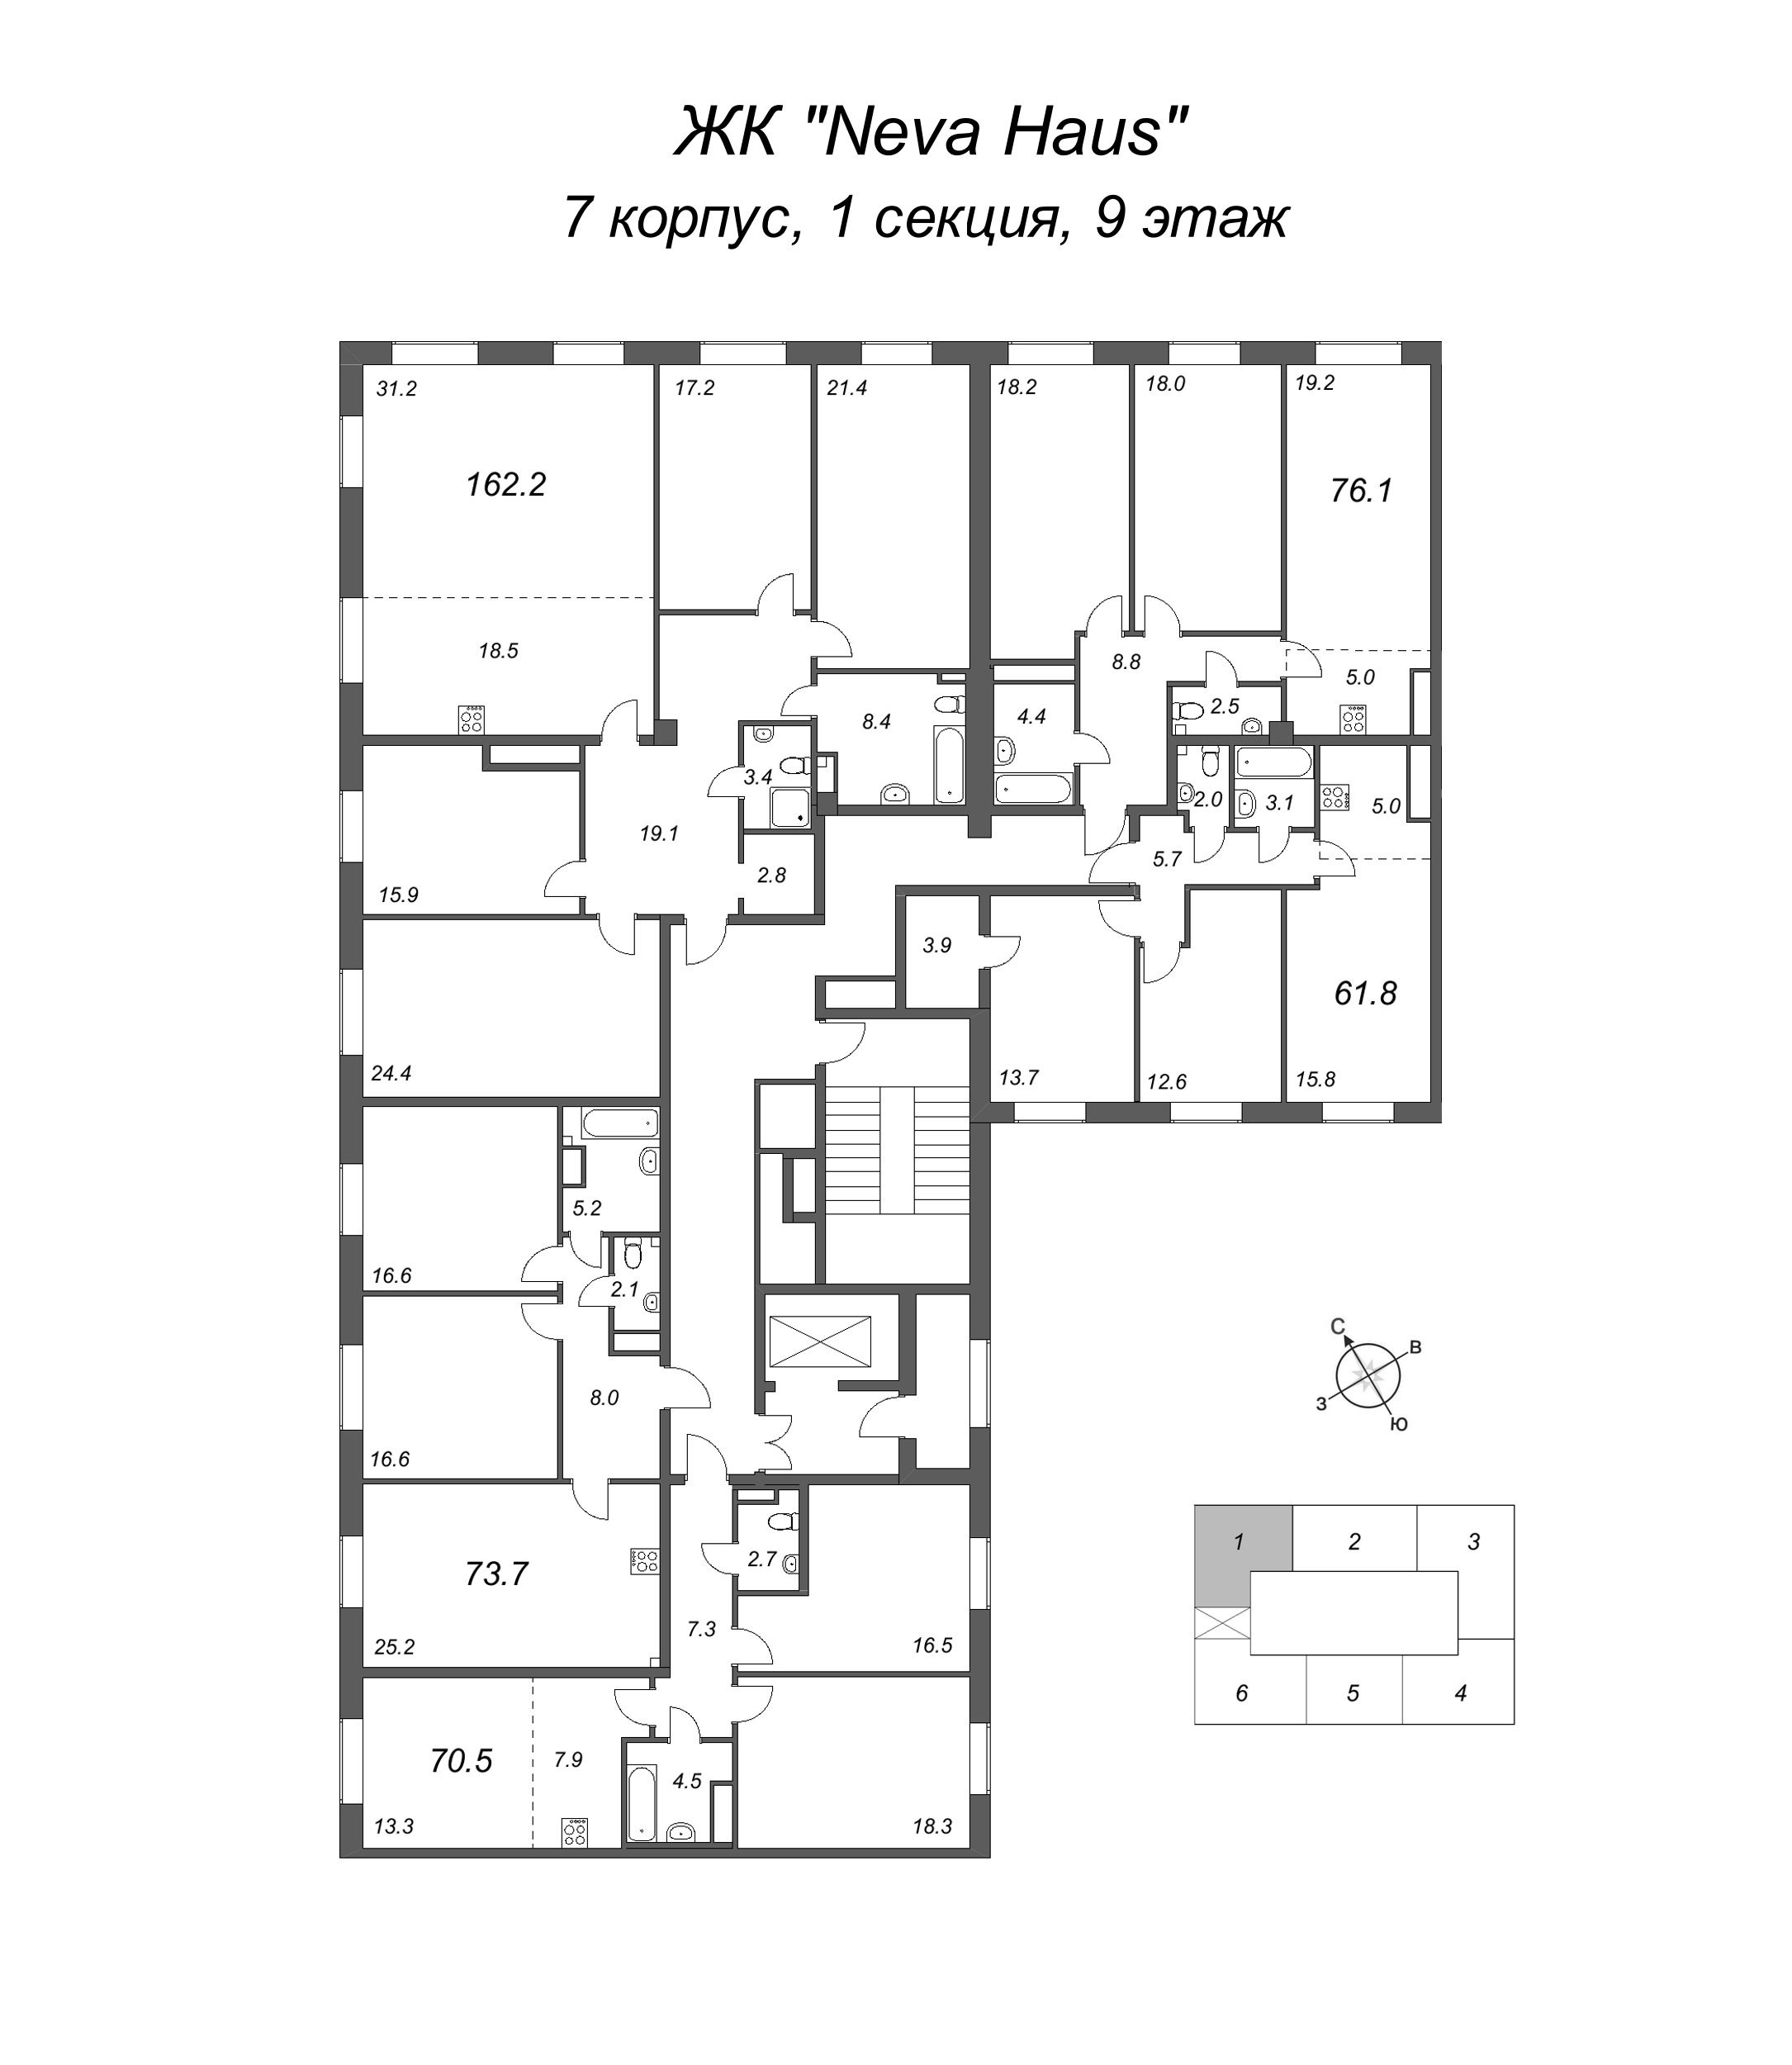 5-комнатная (Евро) квартира, 163 м² в ЖК "Neva Haus" - планировка этажа